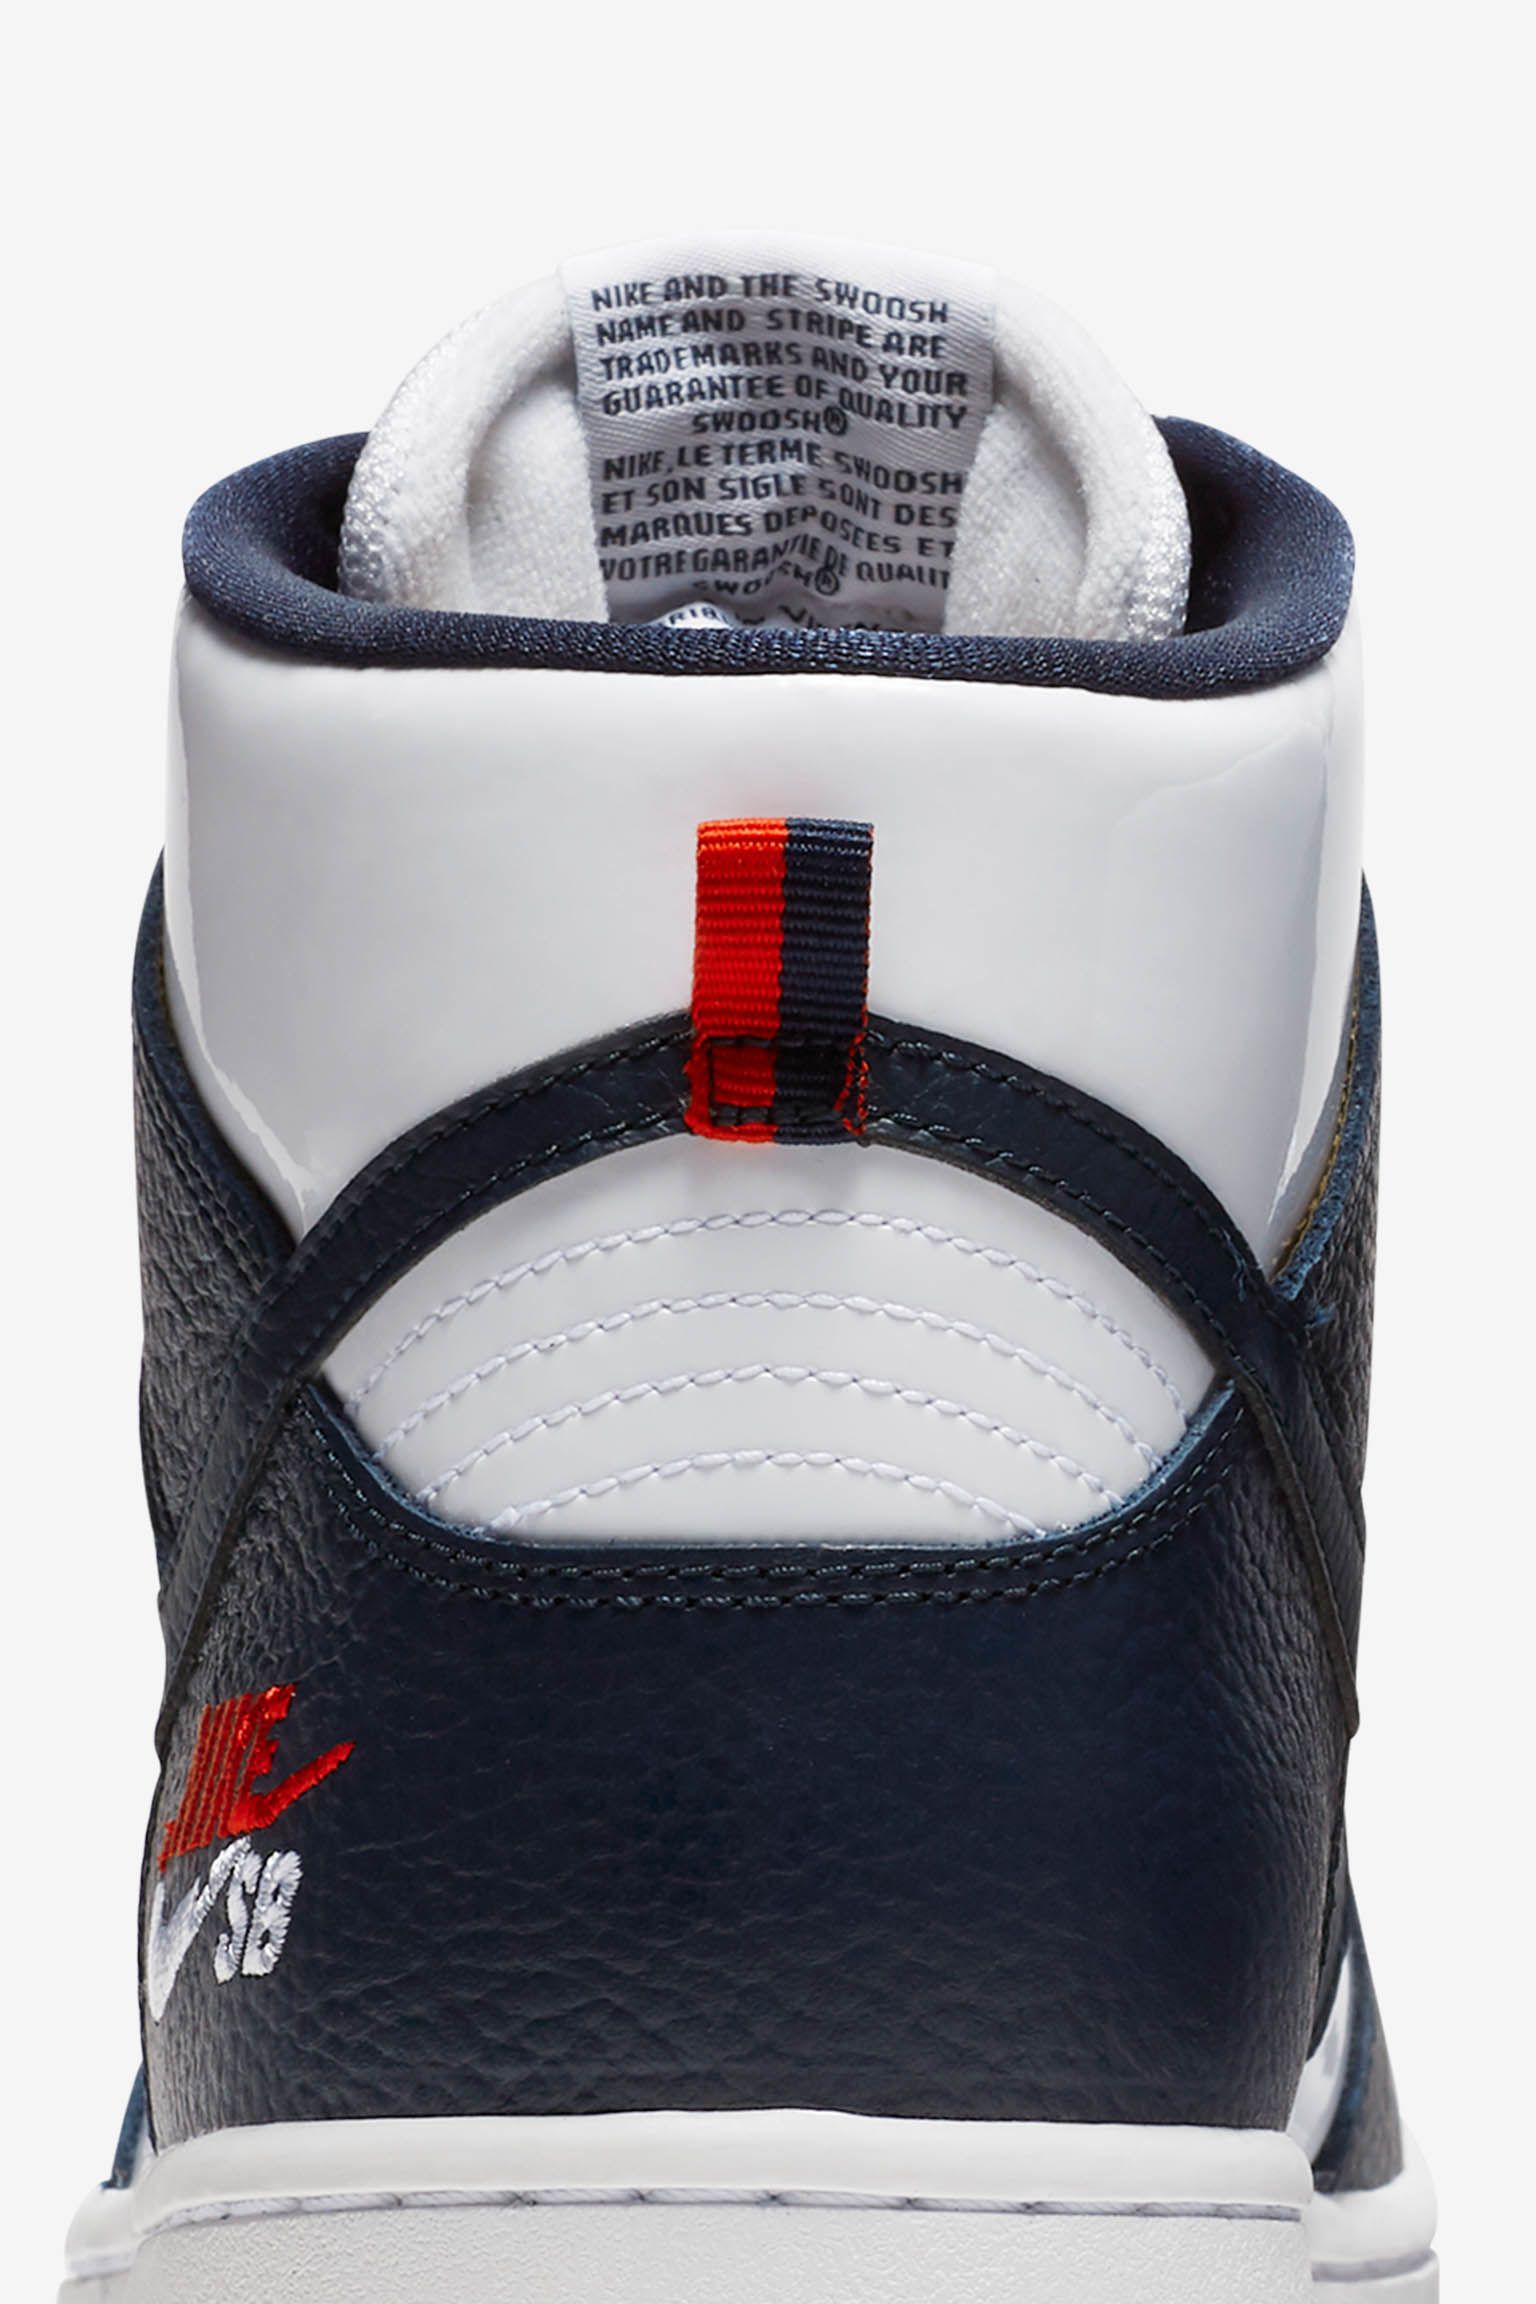 gevolgtrekking steeg Verklaring Nike SB Dunk High Pro 'Obsidian & White' Release Date. Nike SNKRS